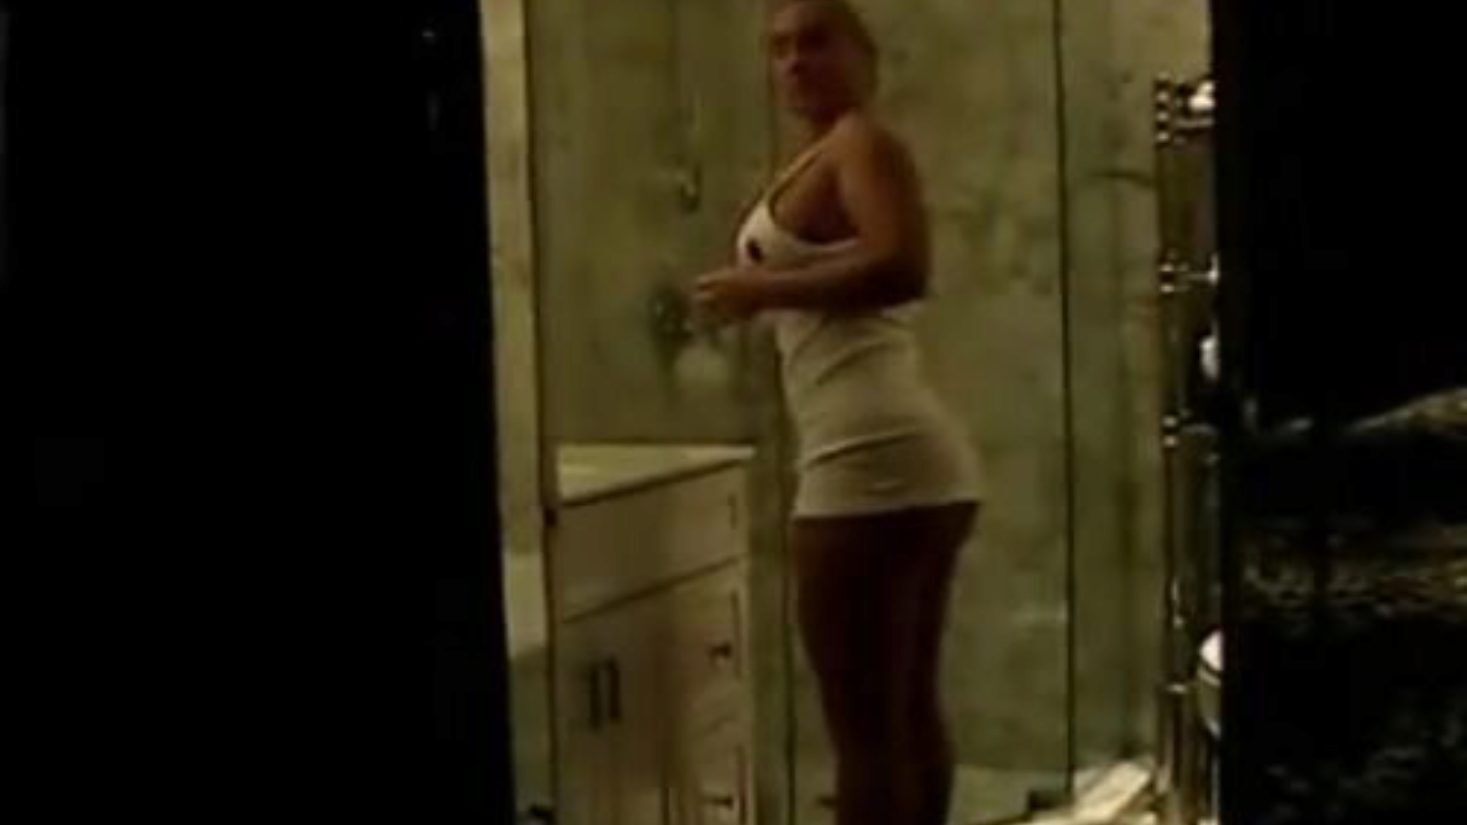 Nicole  Coco  Austin in the Shower